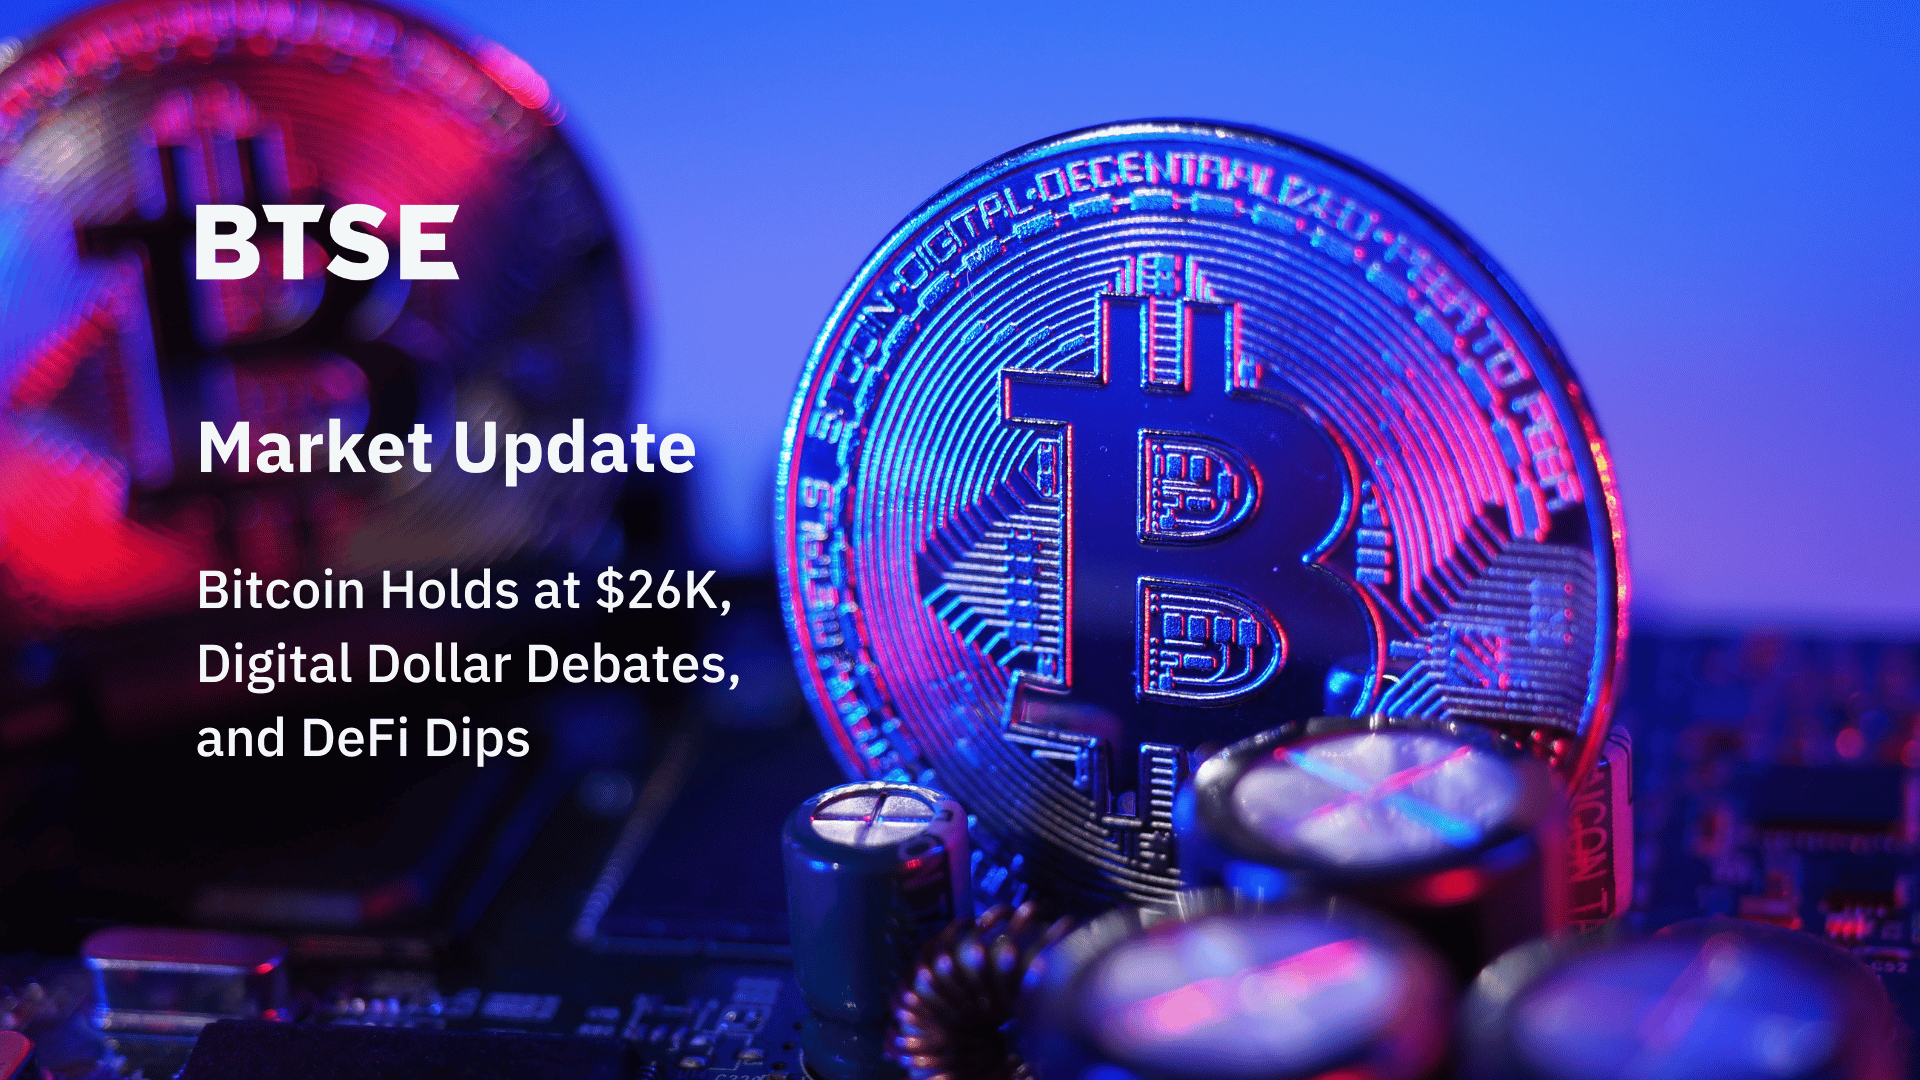 Bitcoin Holds at $26K, Digital Dollar Debates, and DeFi Dips